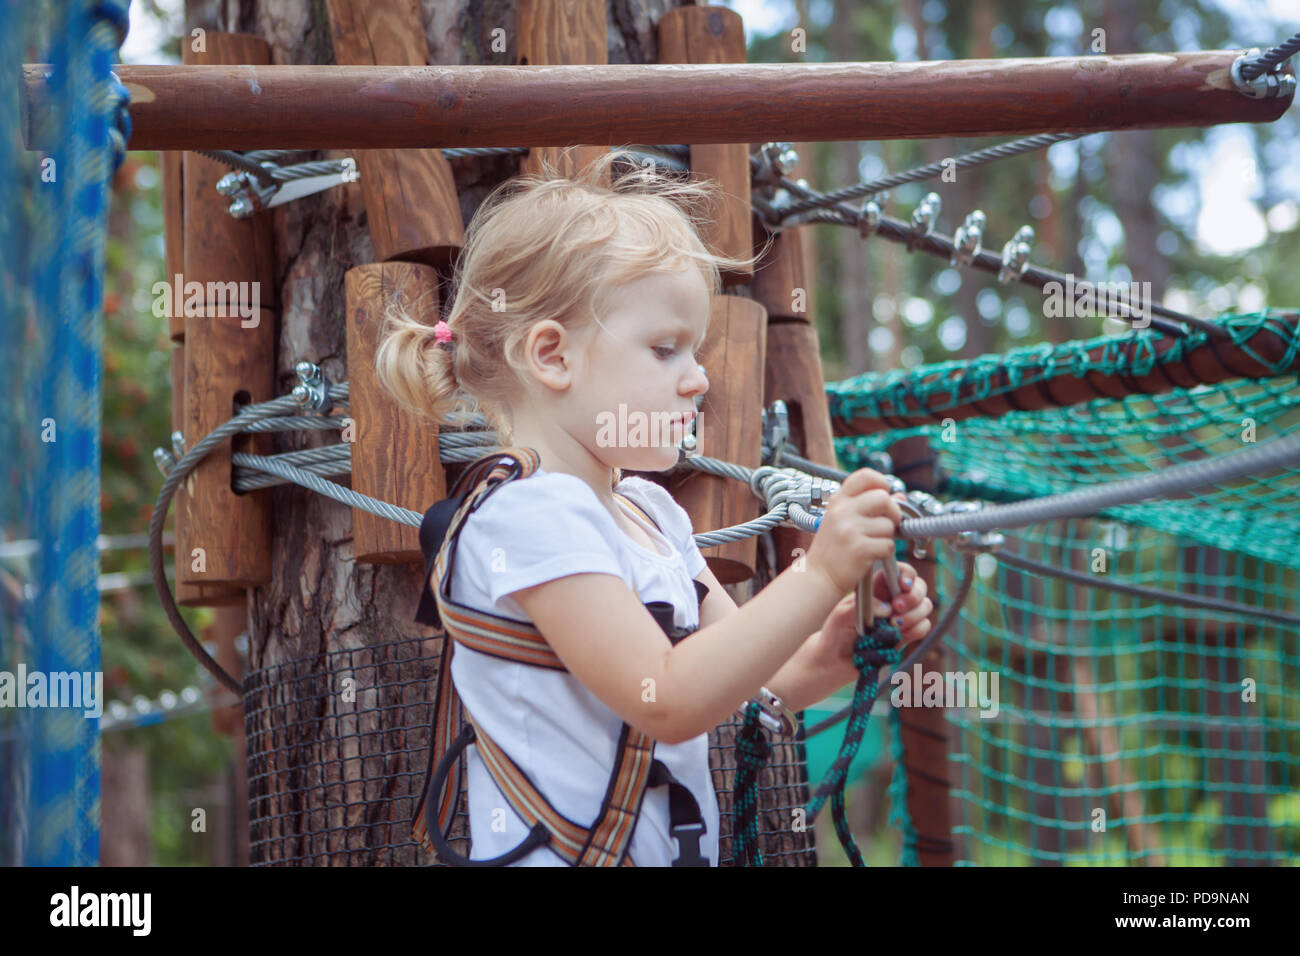 Porträt eines kleinen Mädchens im Seilpark. Sie misst der Karabiner. Stockfoto